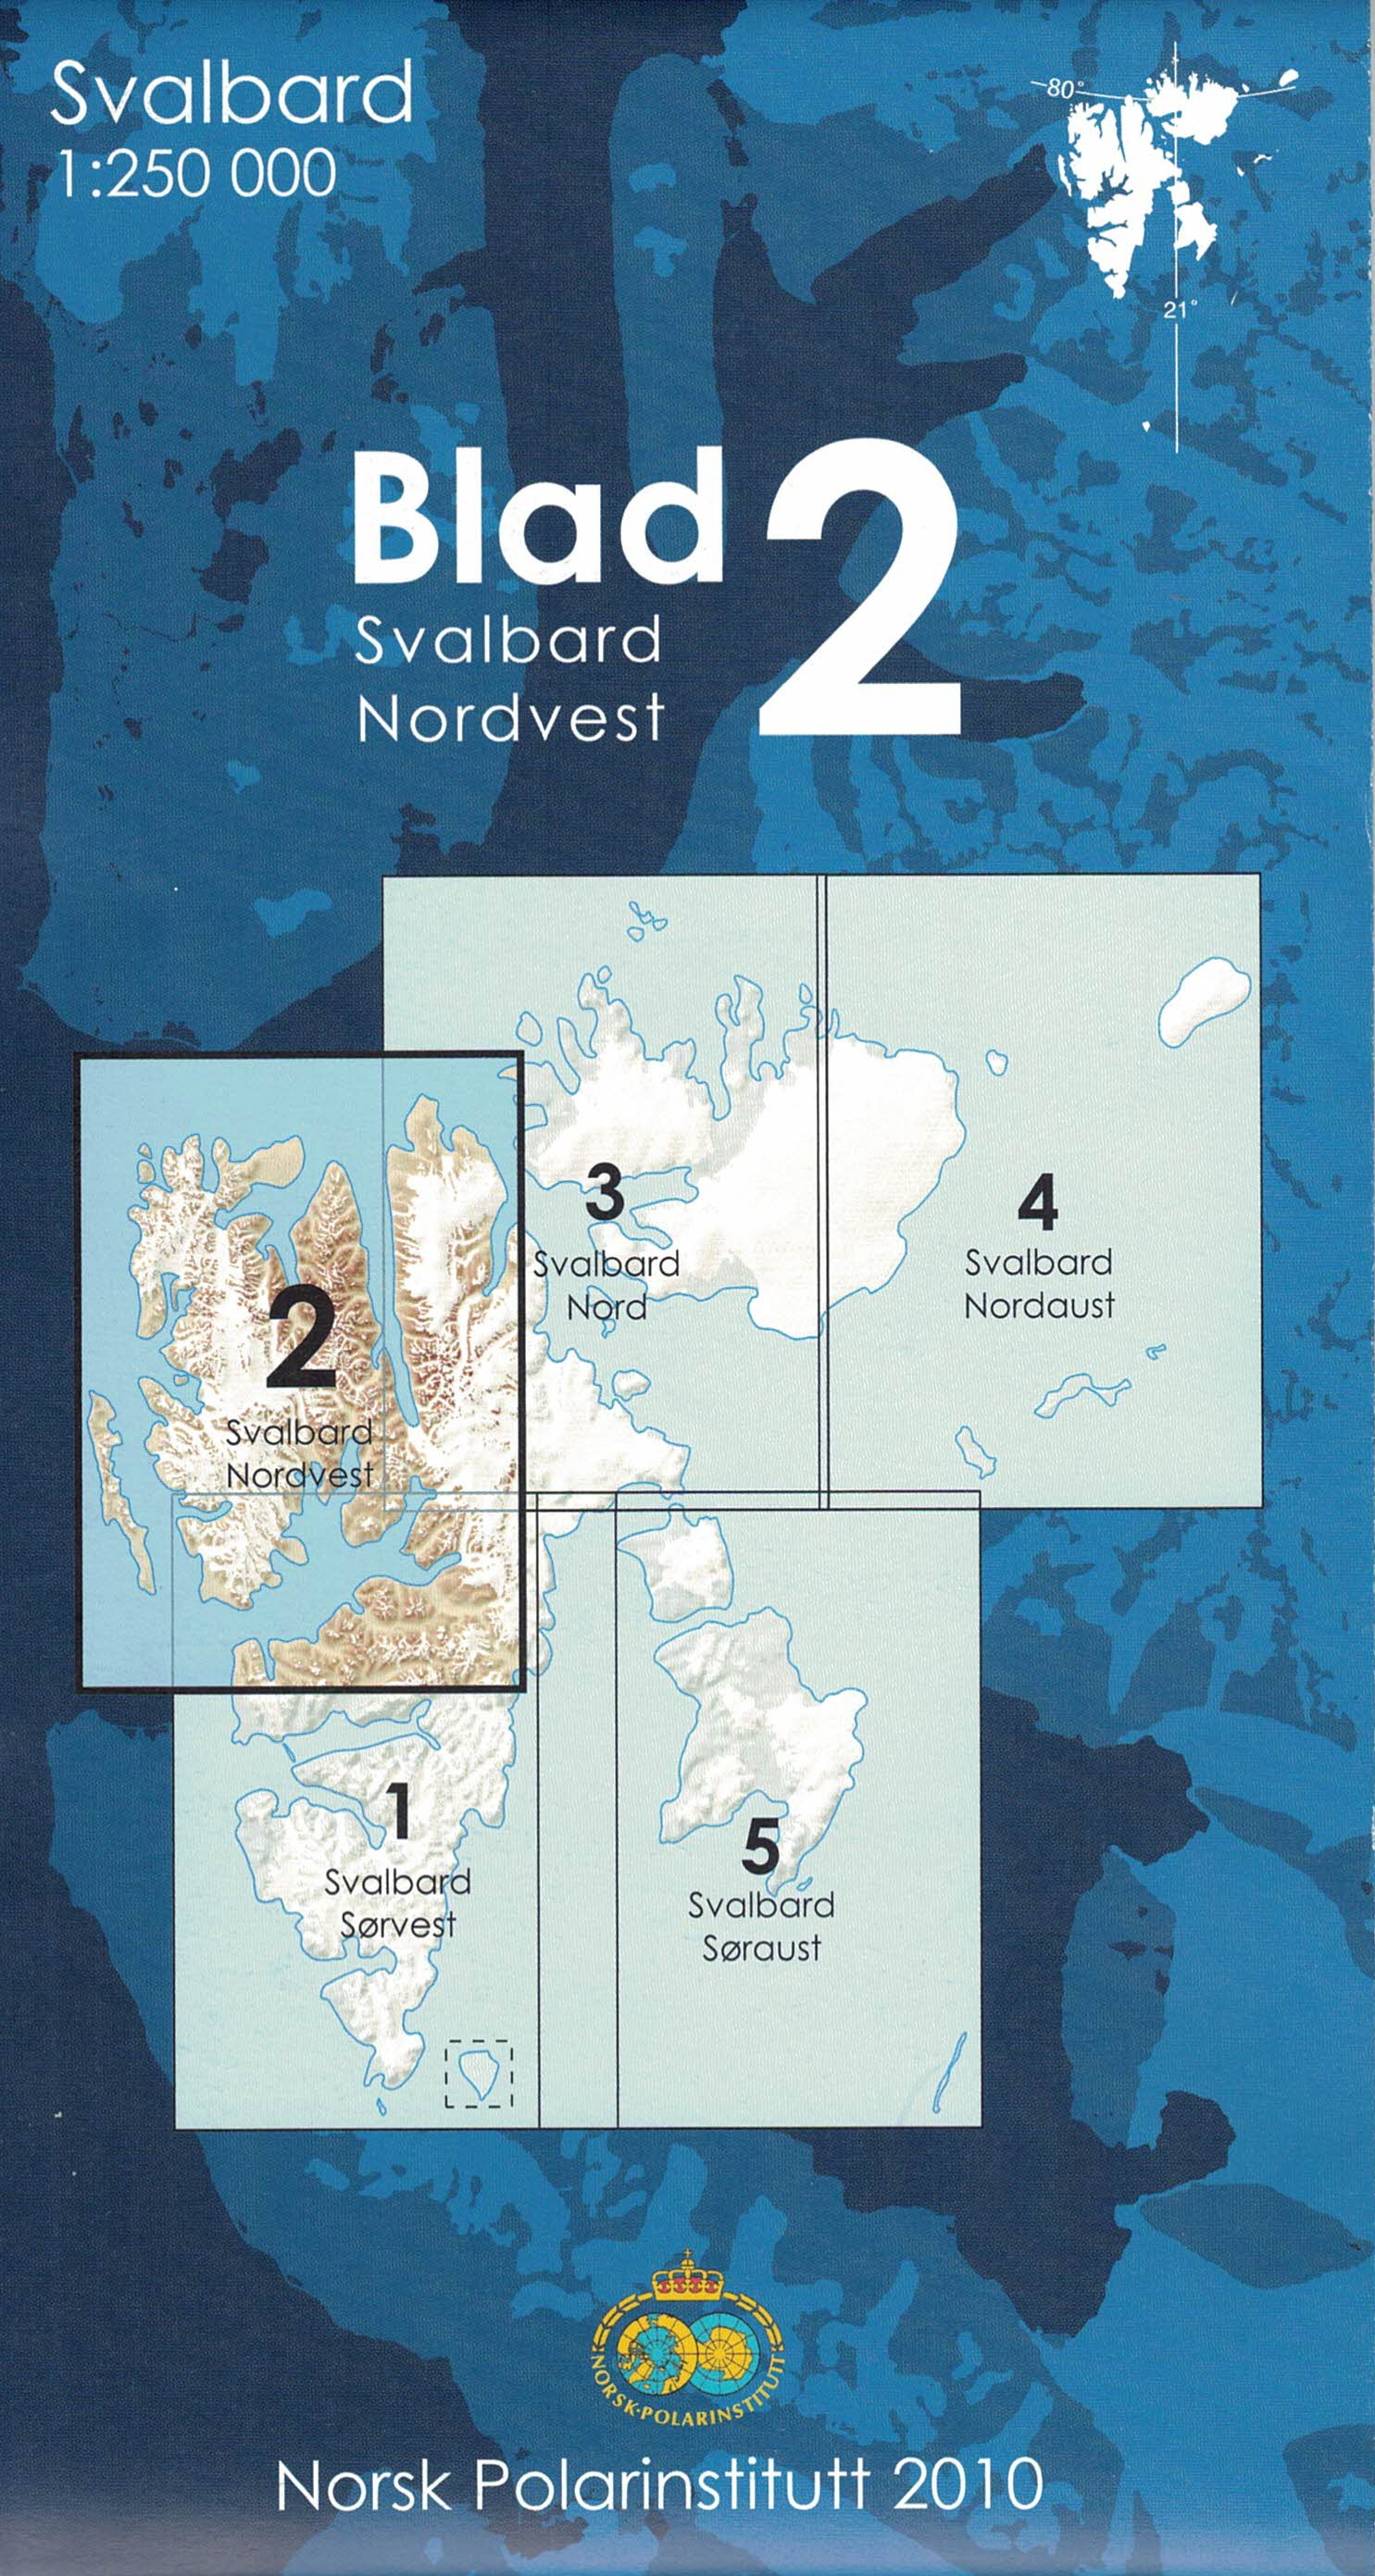 Svalbard Nordvest